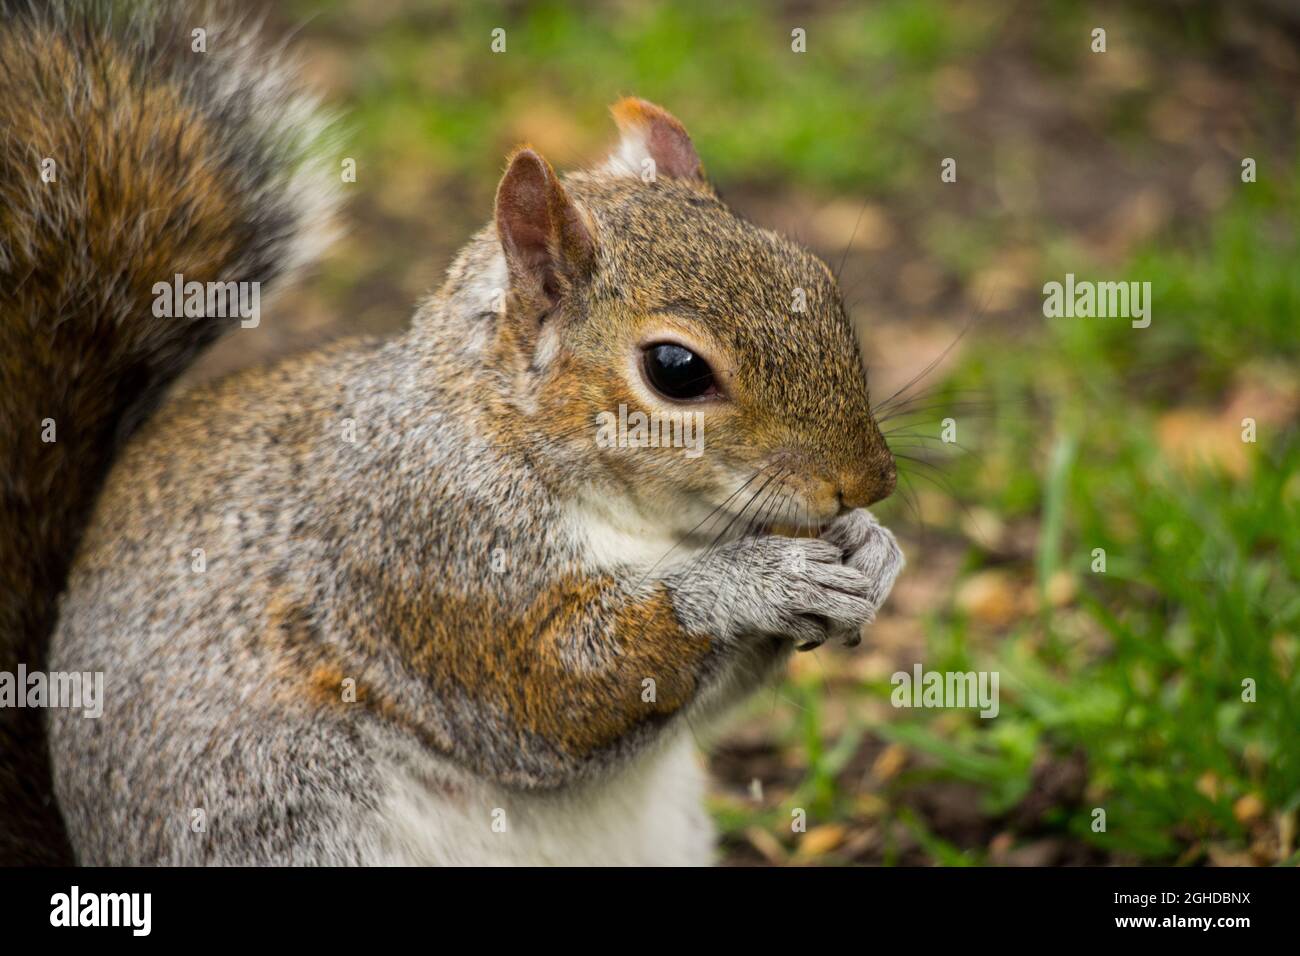 Nahaufnahme eines süßen Eichhörnchens, das eine Nuss isst Stockfoto